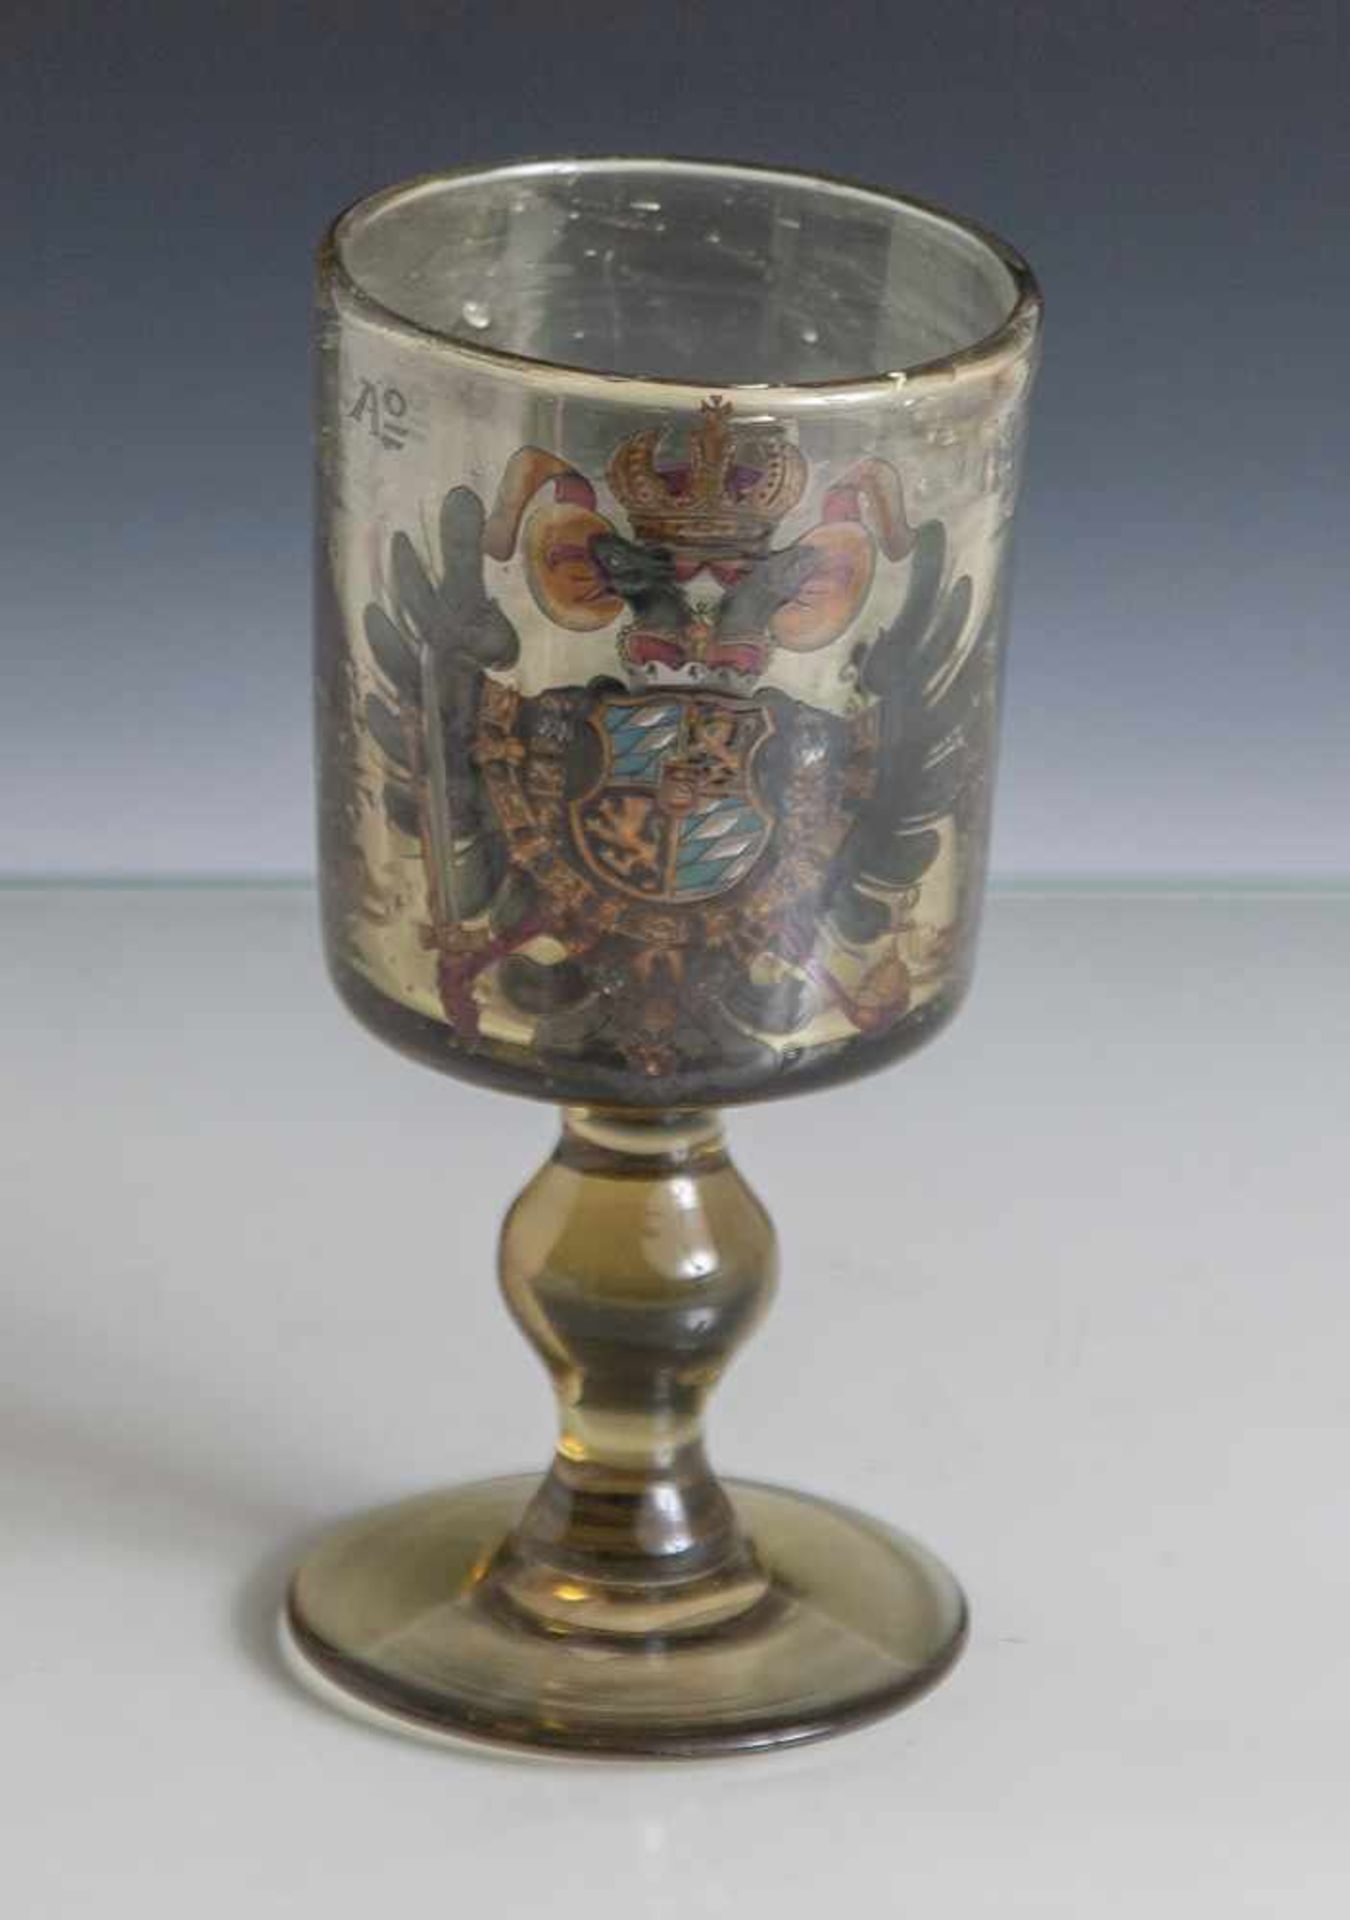 Pokalglas im Stil des 17. Jahrhunderts, olivgrünes Glas mit Doppelkopfadler und Datierung 1742 in